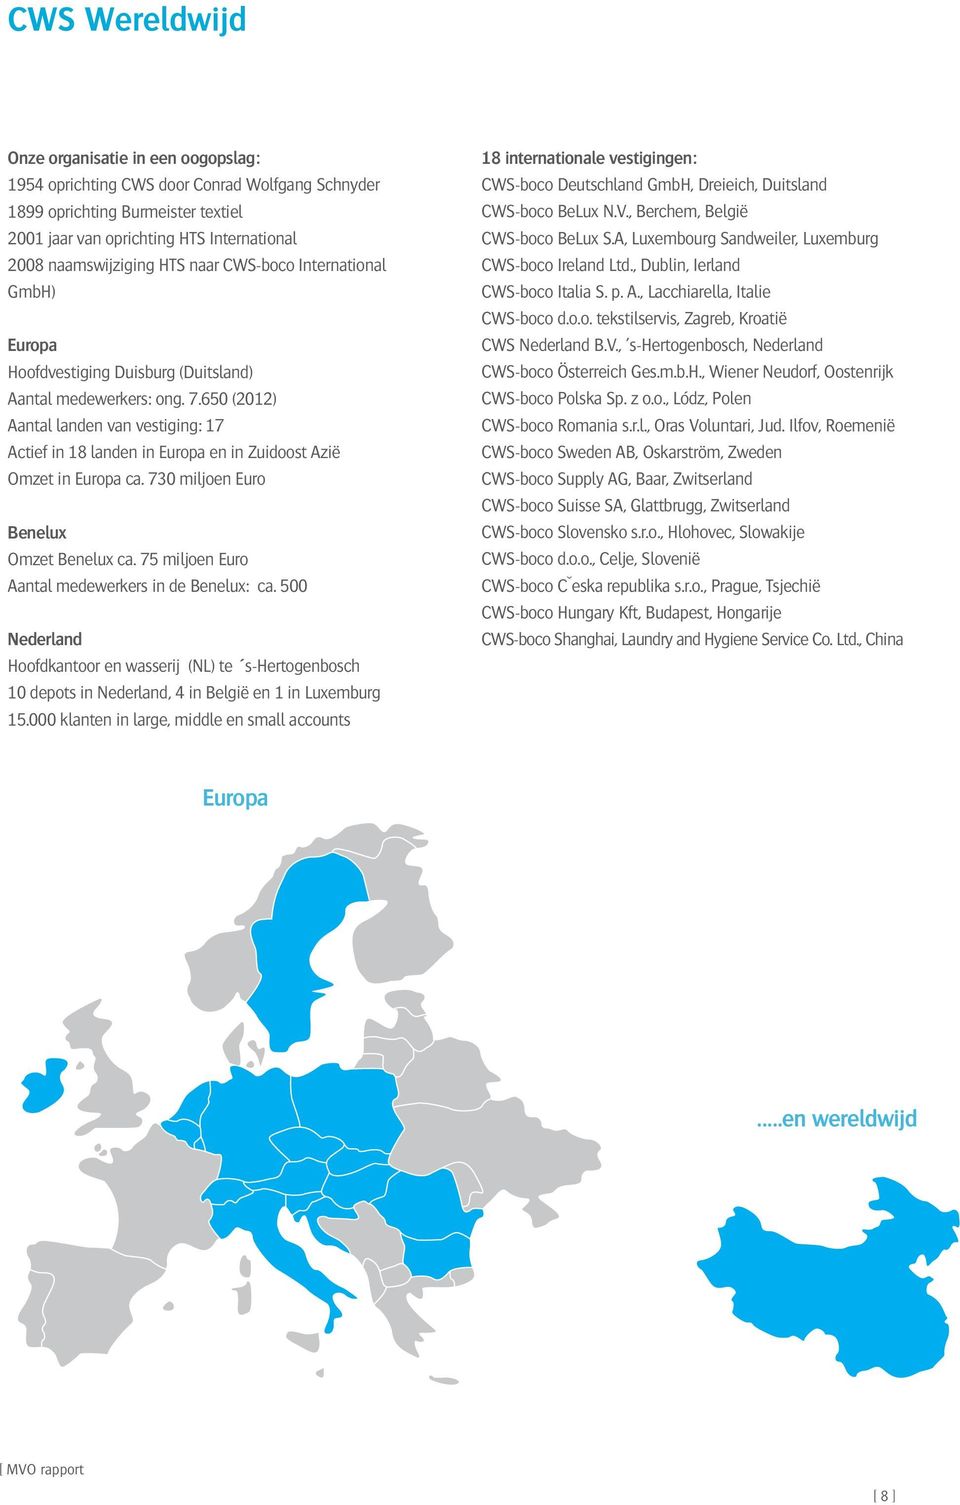 650 (2012) Aantal landen van vestiging: 17 Actief in 18 landen in Europa en in Zuidoost Azië Omzet in Europa ca. 730 miljoen Euro Benelux Omzet Benelux ca.